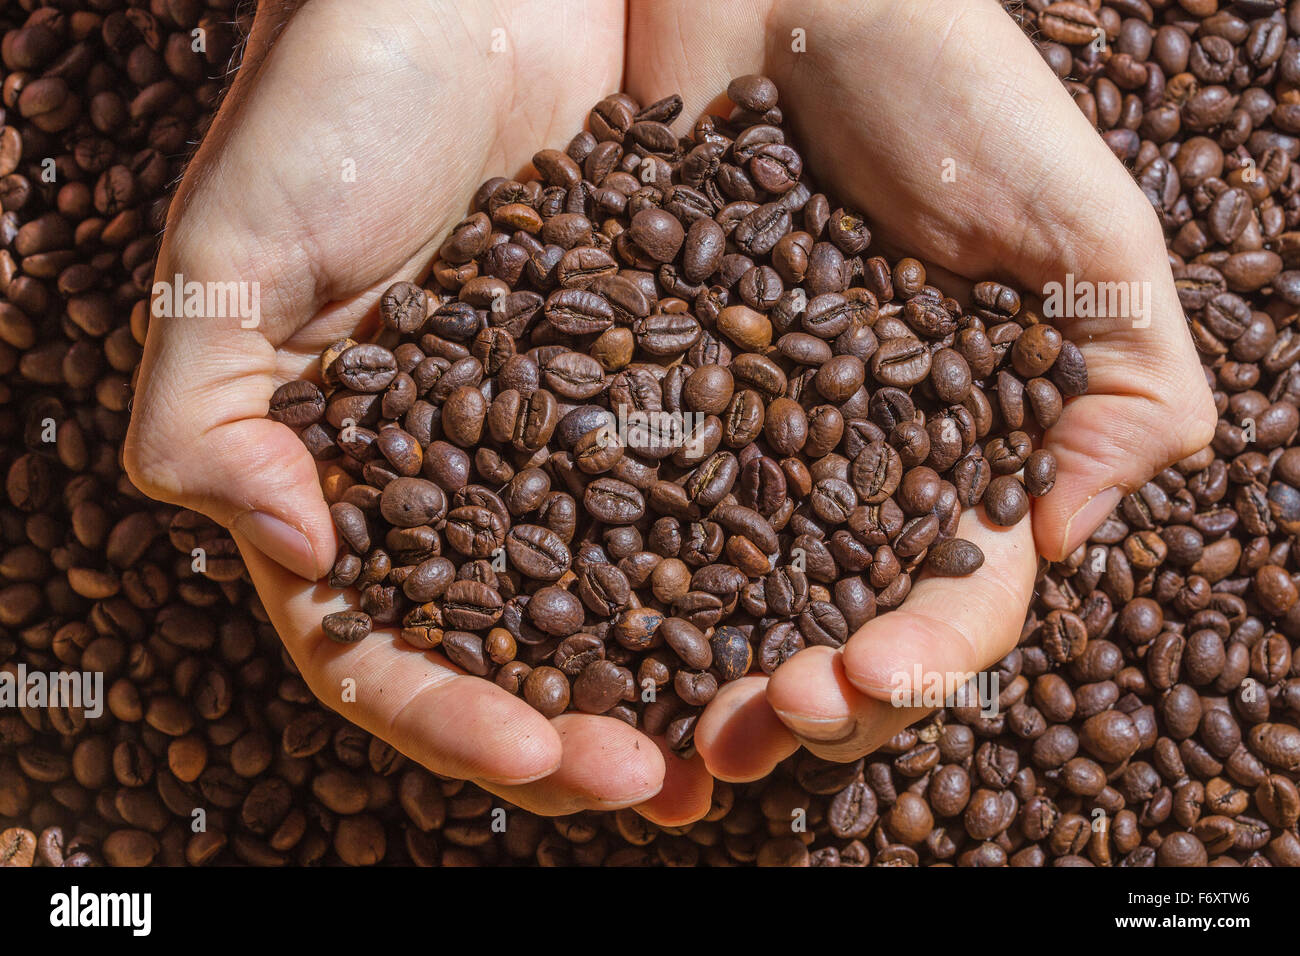 Hände eines Mannes hält eine Handvoll braunen Kaffeebohnen. Kaffeebohnen als einheitlichen Hintergrund. Stockfoto